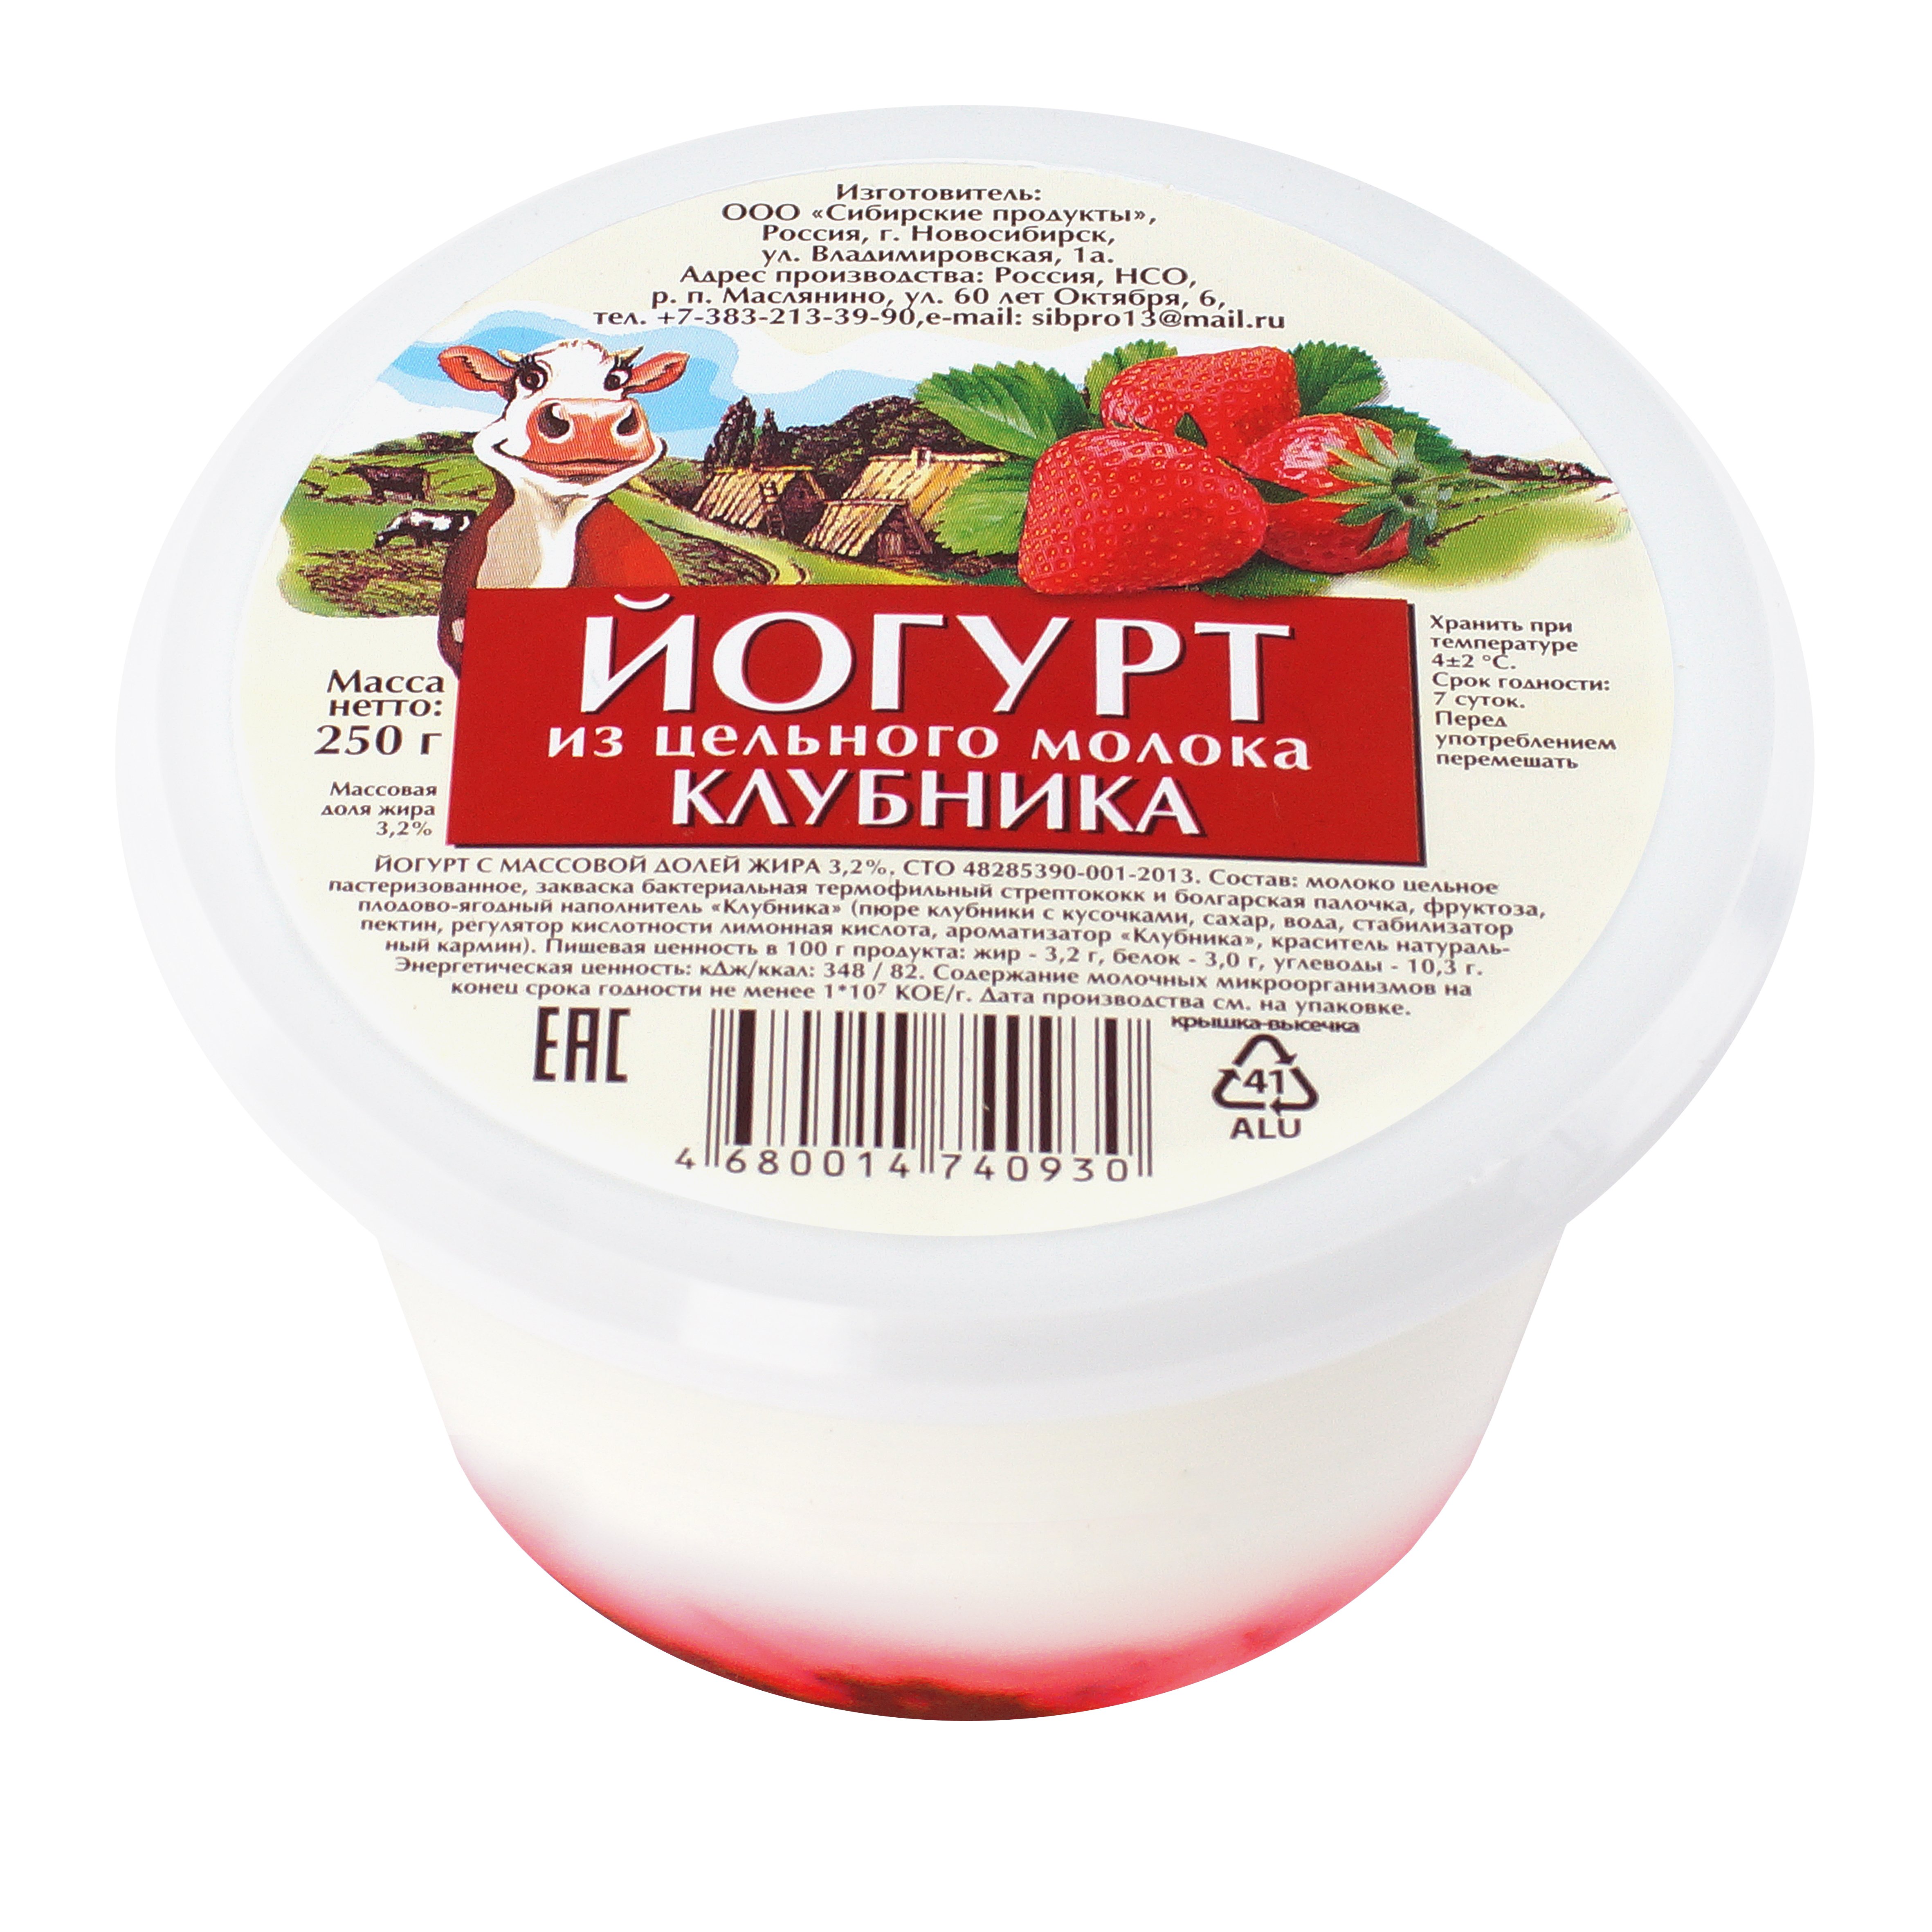 Йогурт из цельного молока клубника 3,2% 250 гр. Сибирские продукты